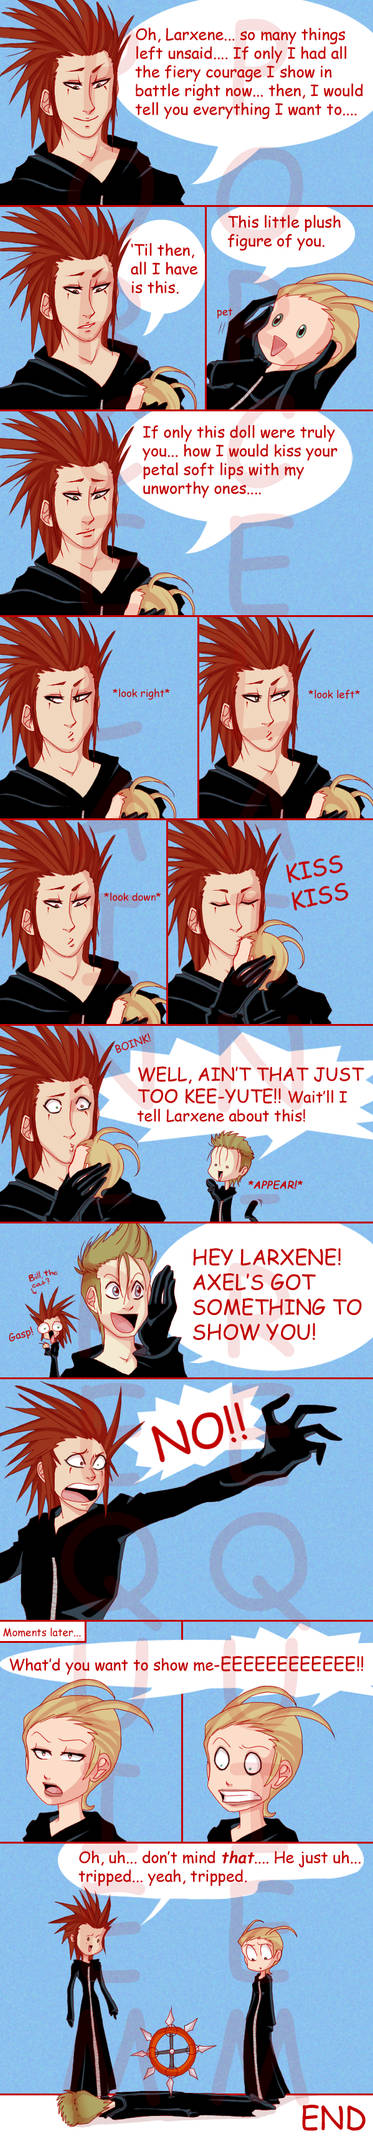 Axel's dirty little secret...